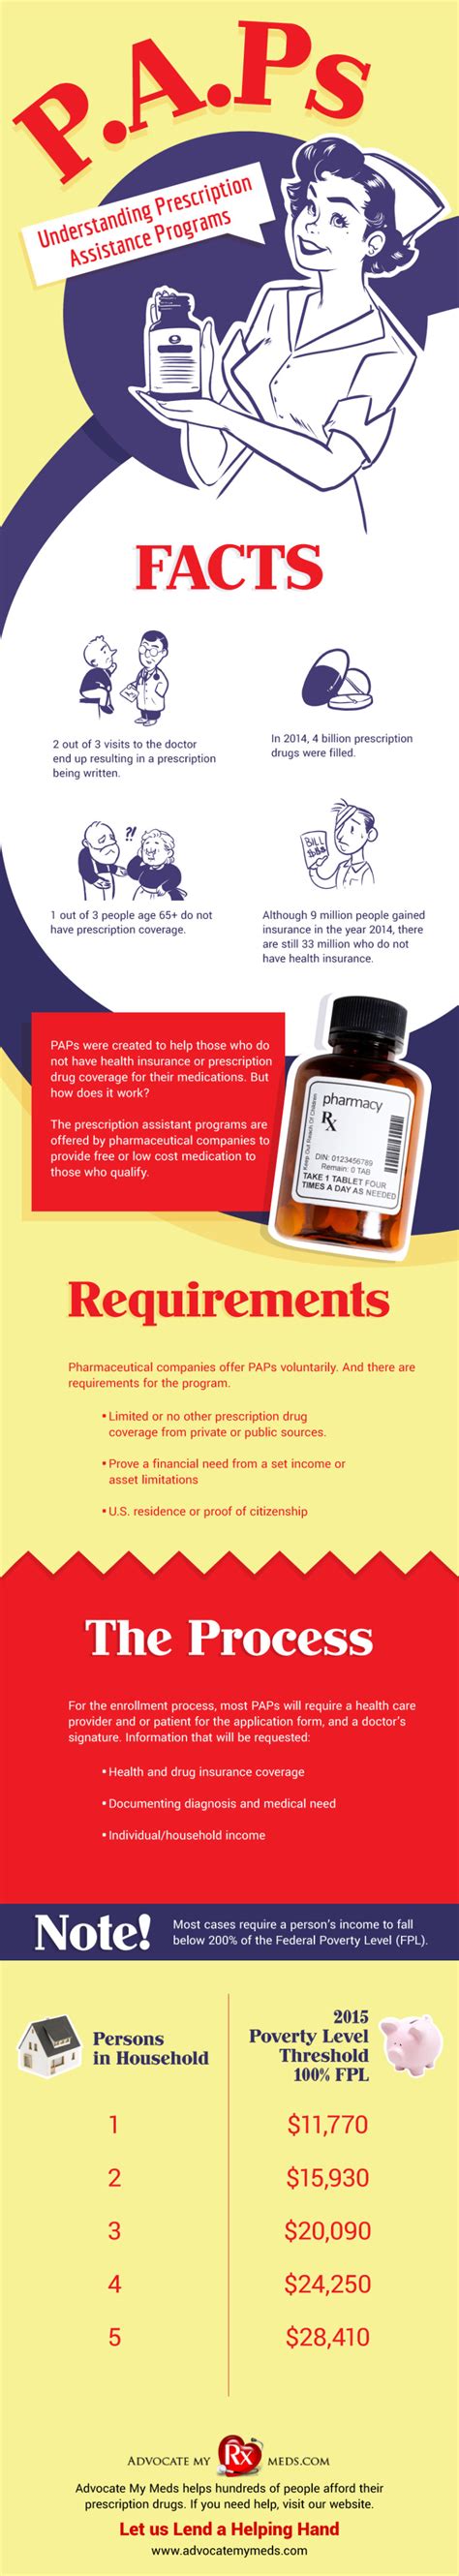 Understanding Prescription Assistance Programs Paps Infographic